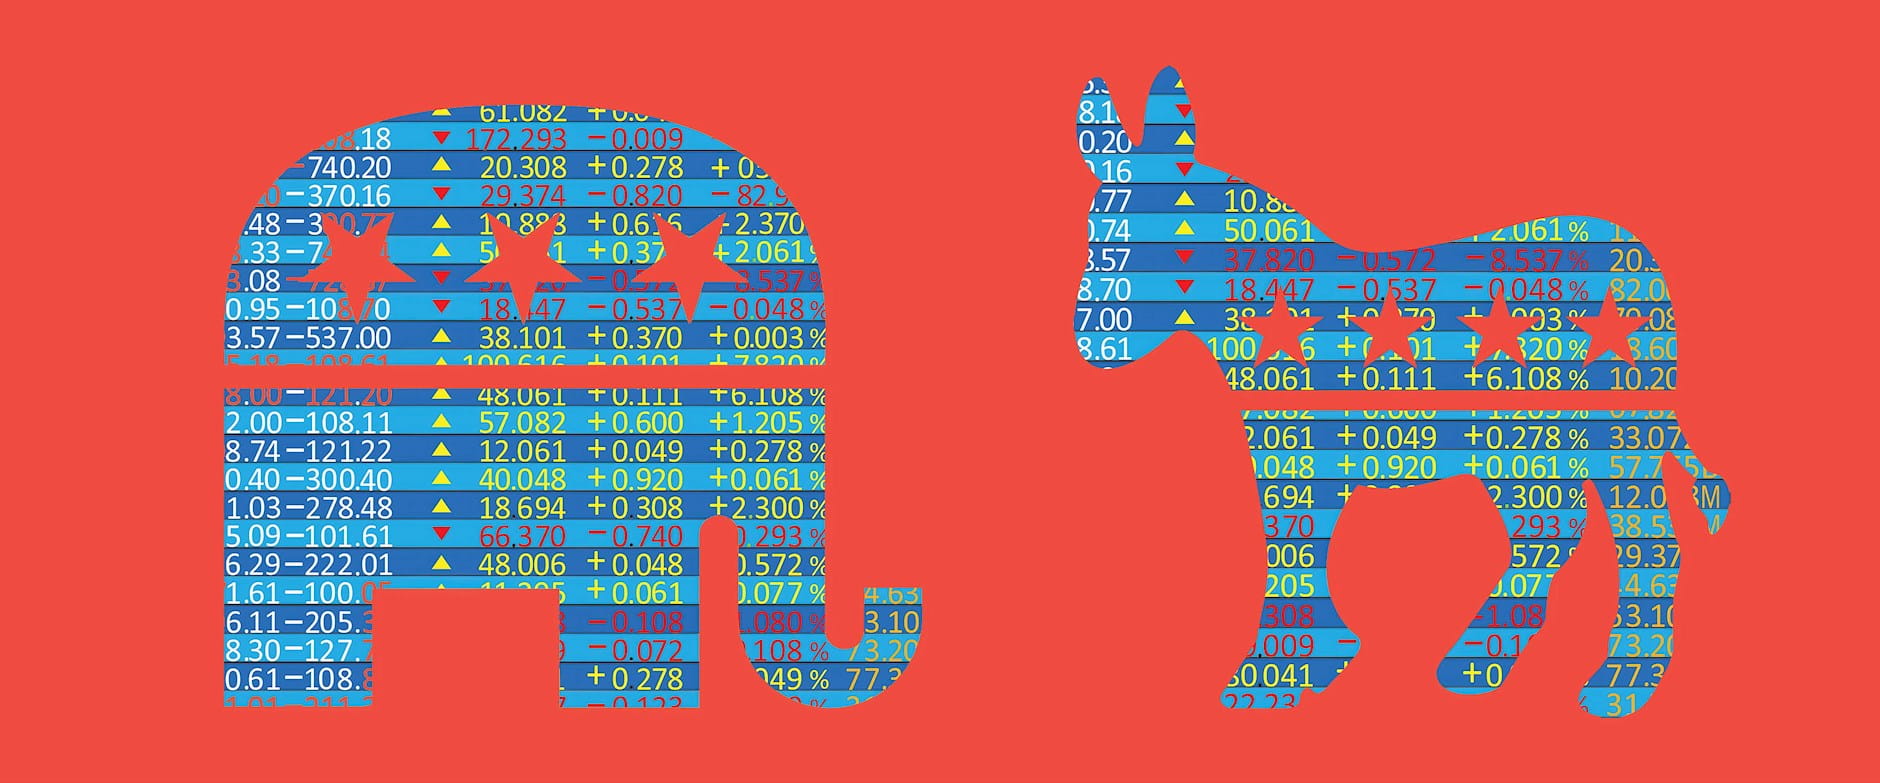 Stocks shaped to look like a donkey and elephant